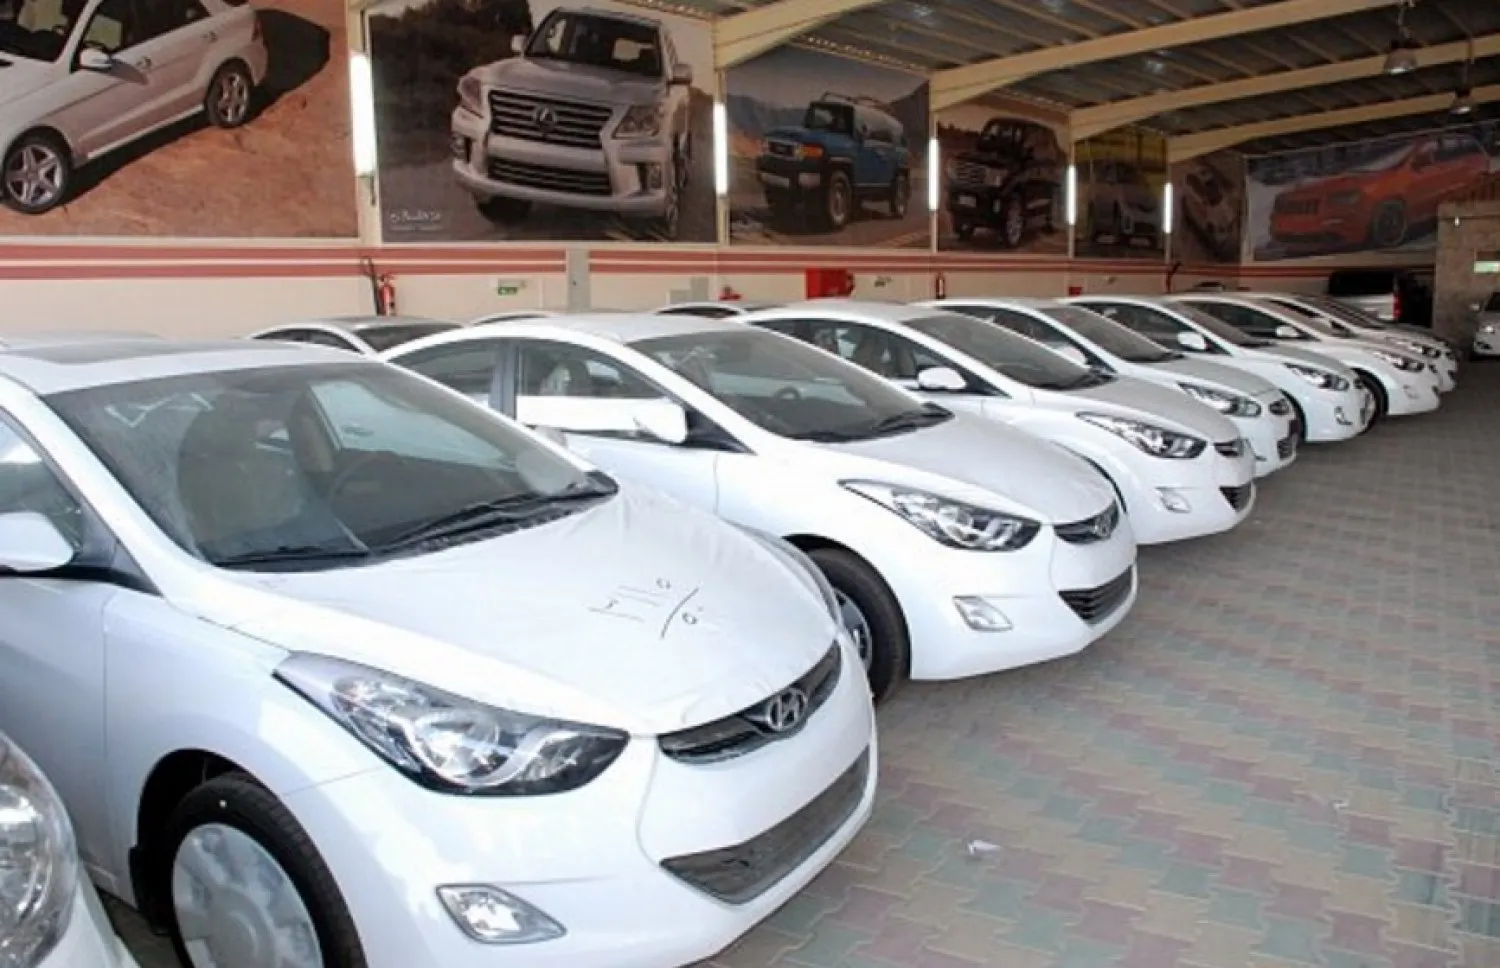 أرخص 4 سيارات تويوتا مستعملة للبيع بقسط شهري 400 ريال في السعودية بحالات ممتازة